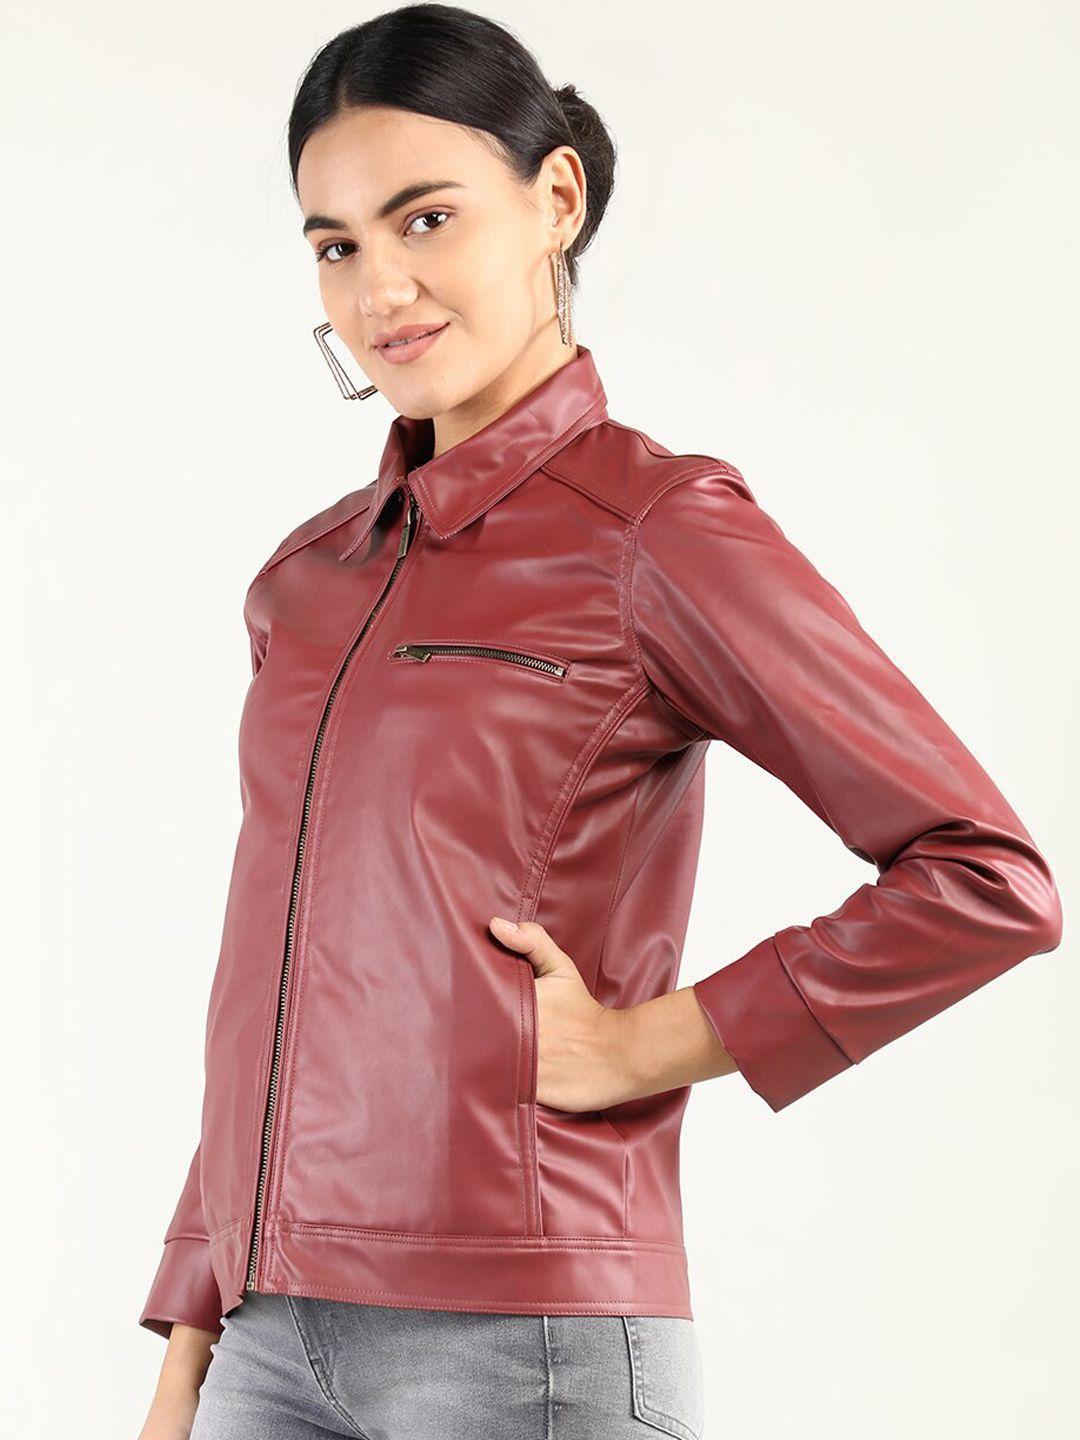 dlanxa women leather jacket